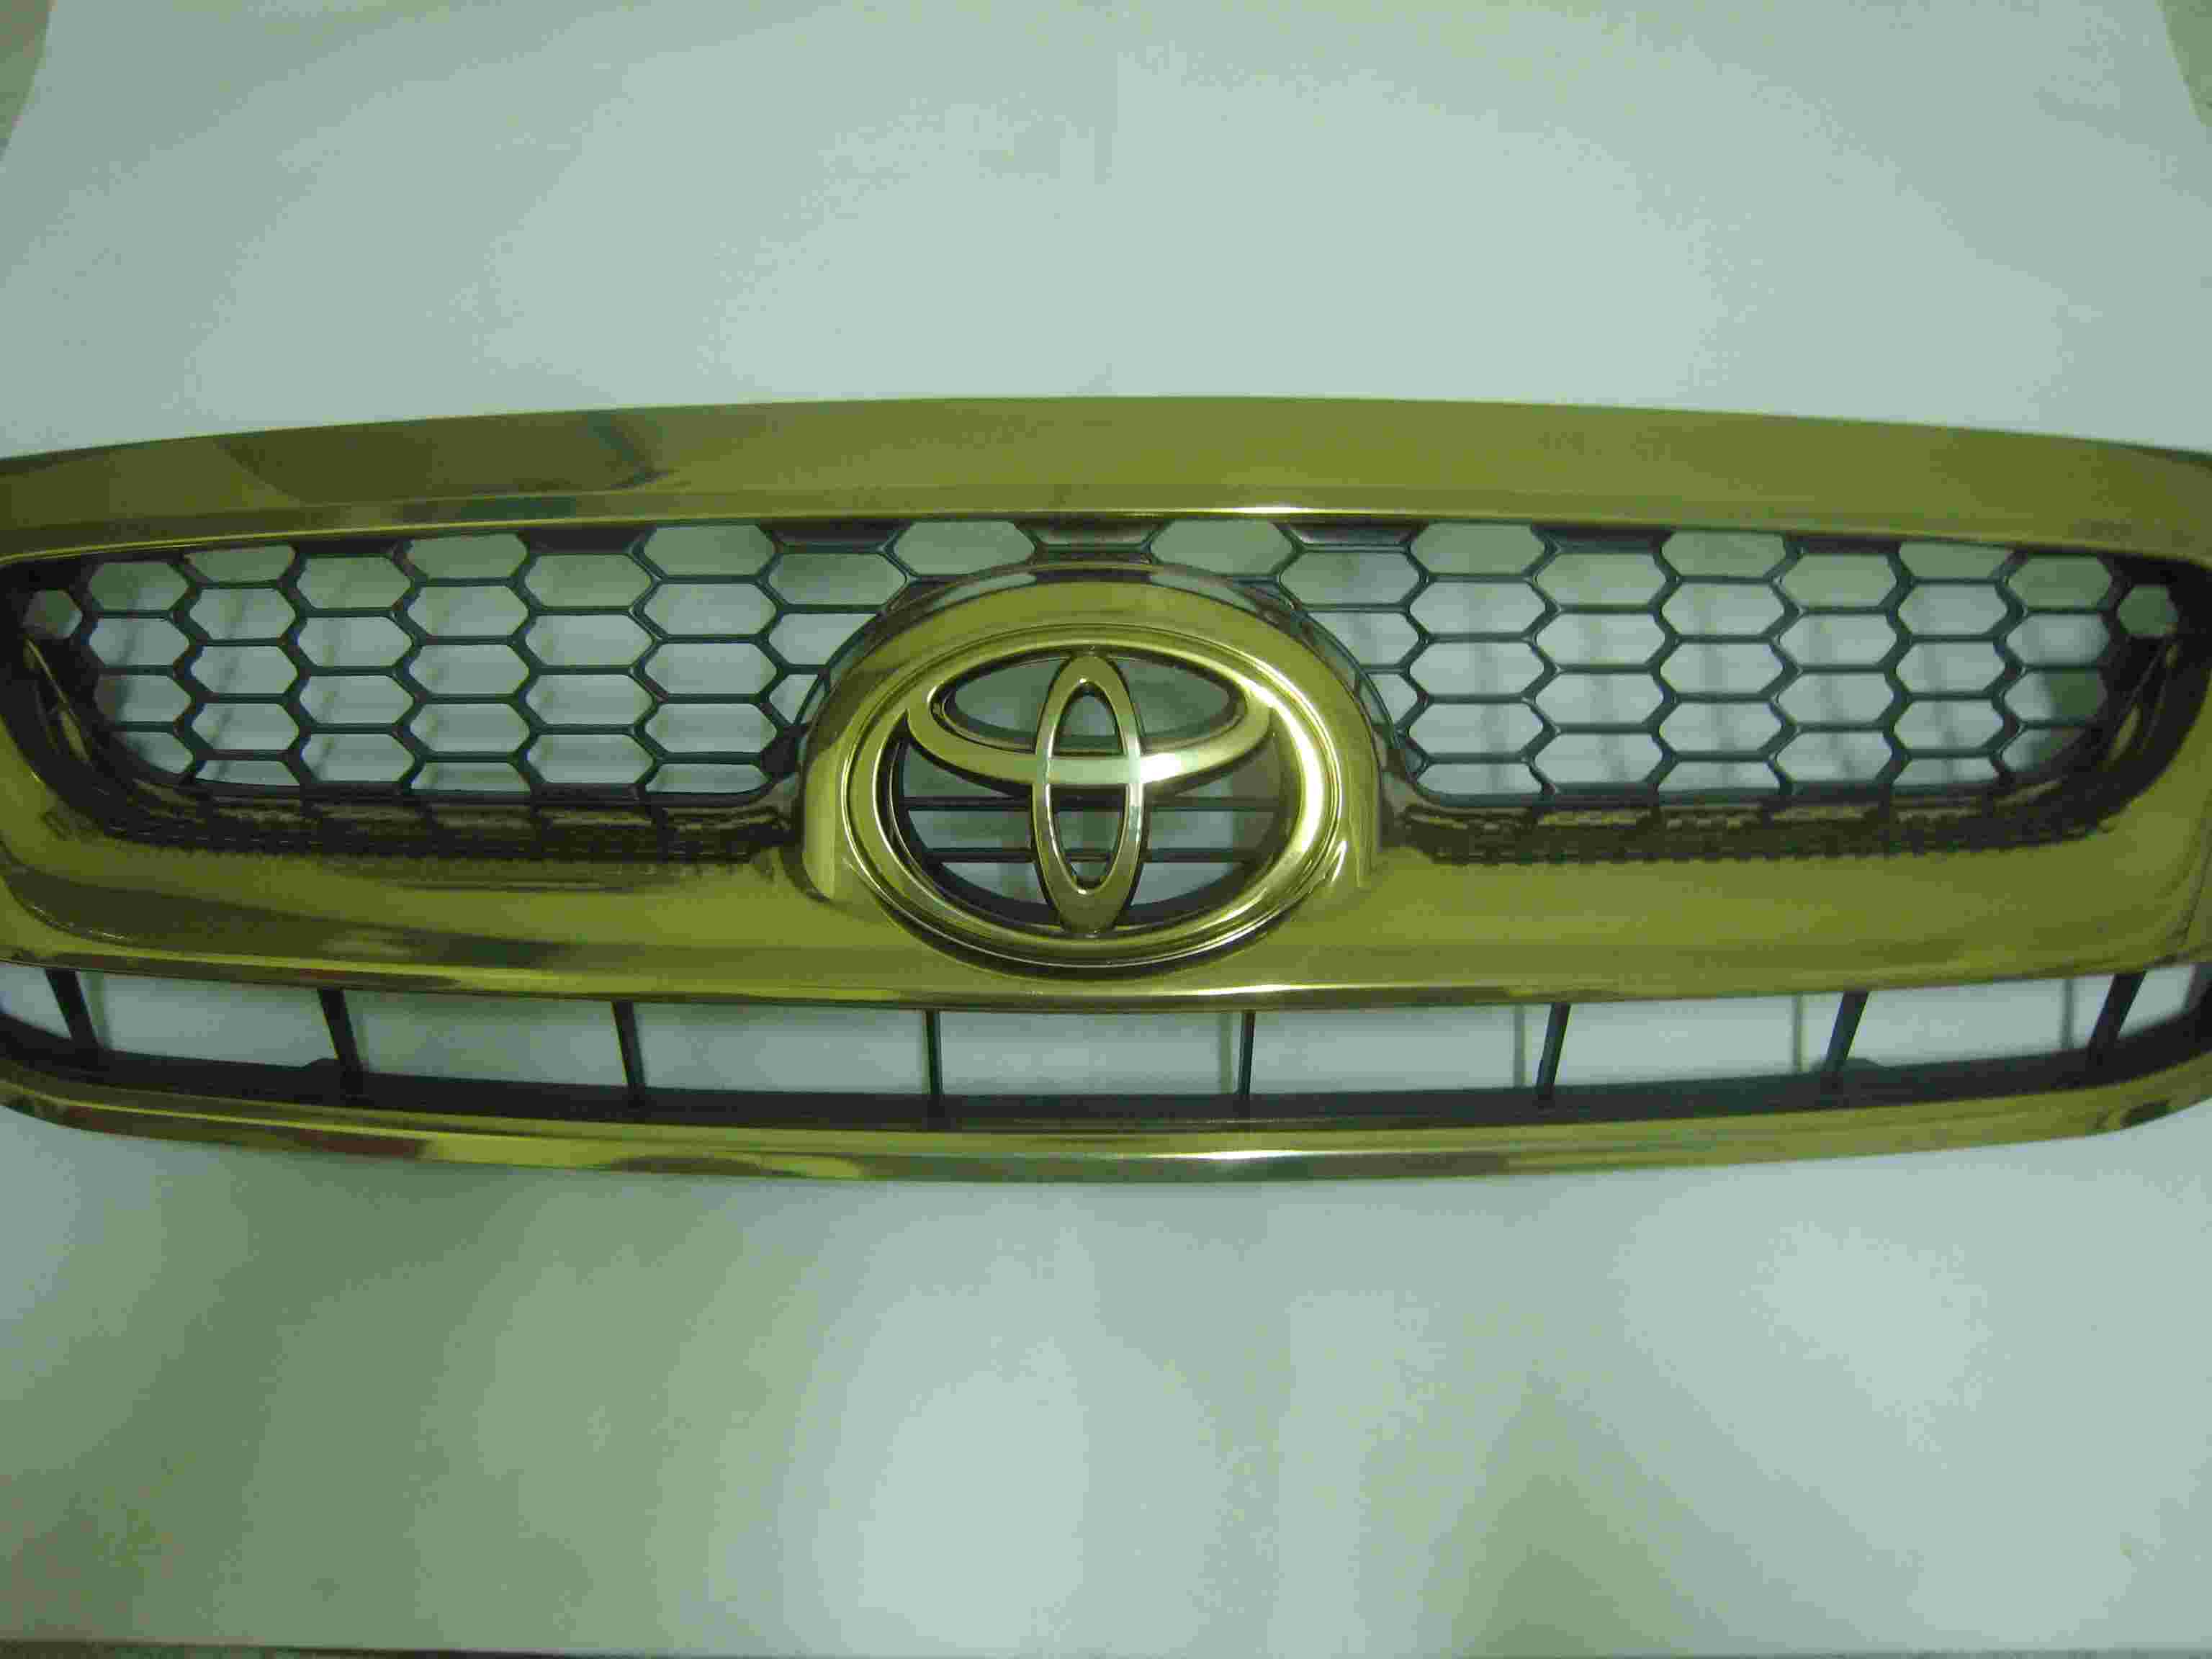 กระจังหน้า วีโก้ สมาร์ท 08 พ่นสีทอง grille vigo smart 08 golden painted